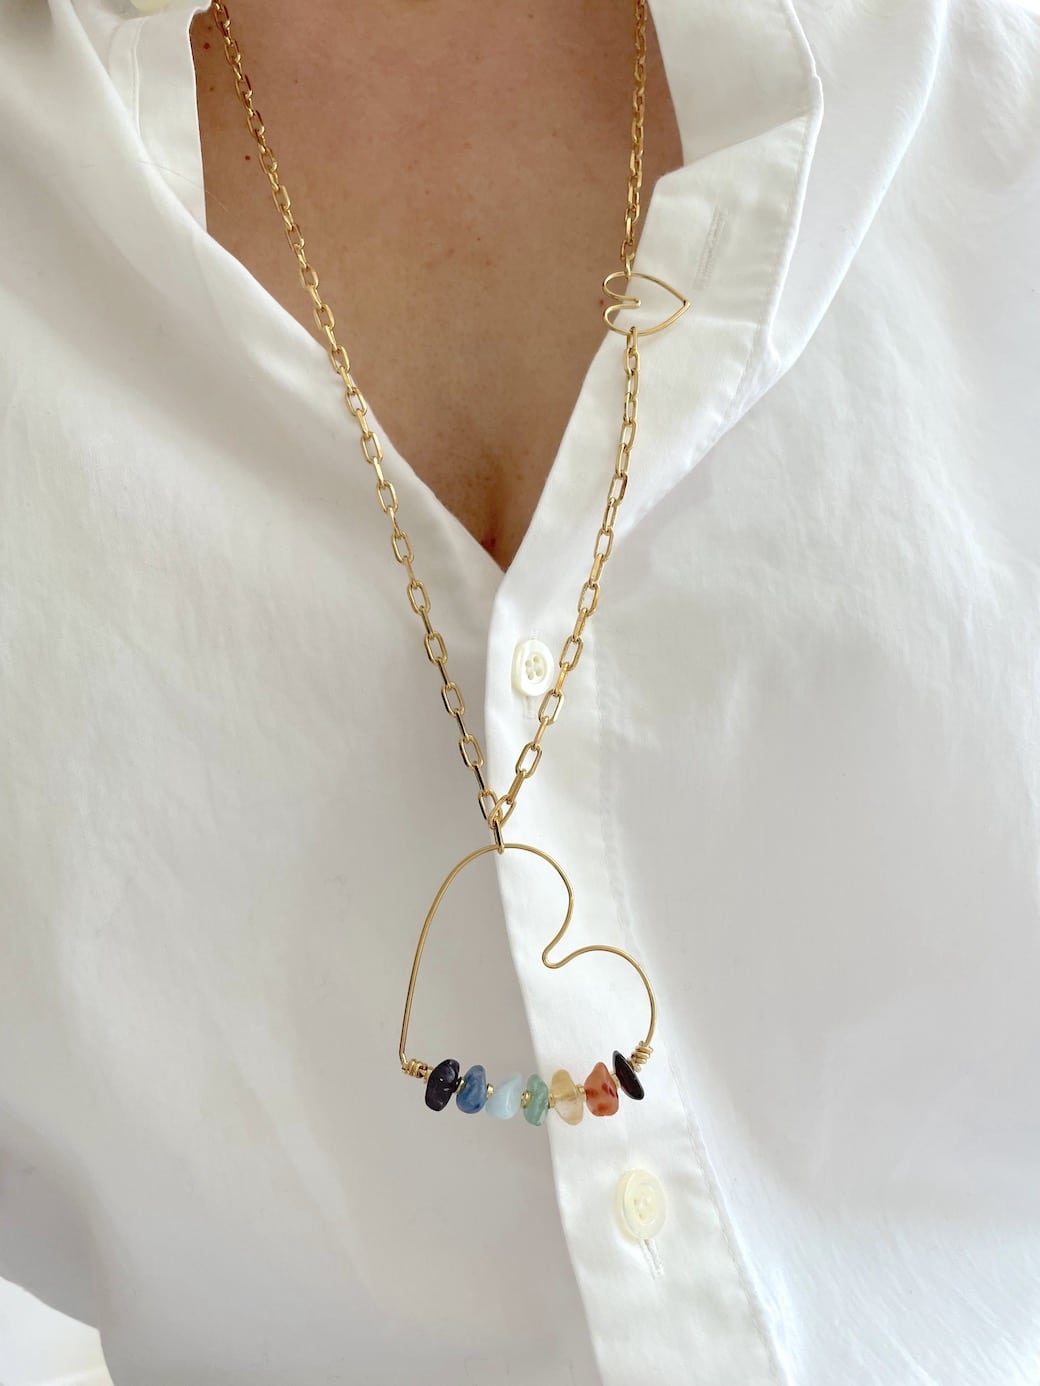 Long necklace Sautoir COEUR 7 CHAKRAS by sande paris Jewelry